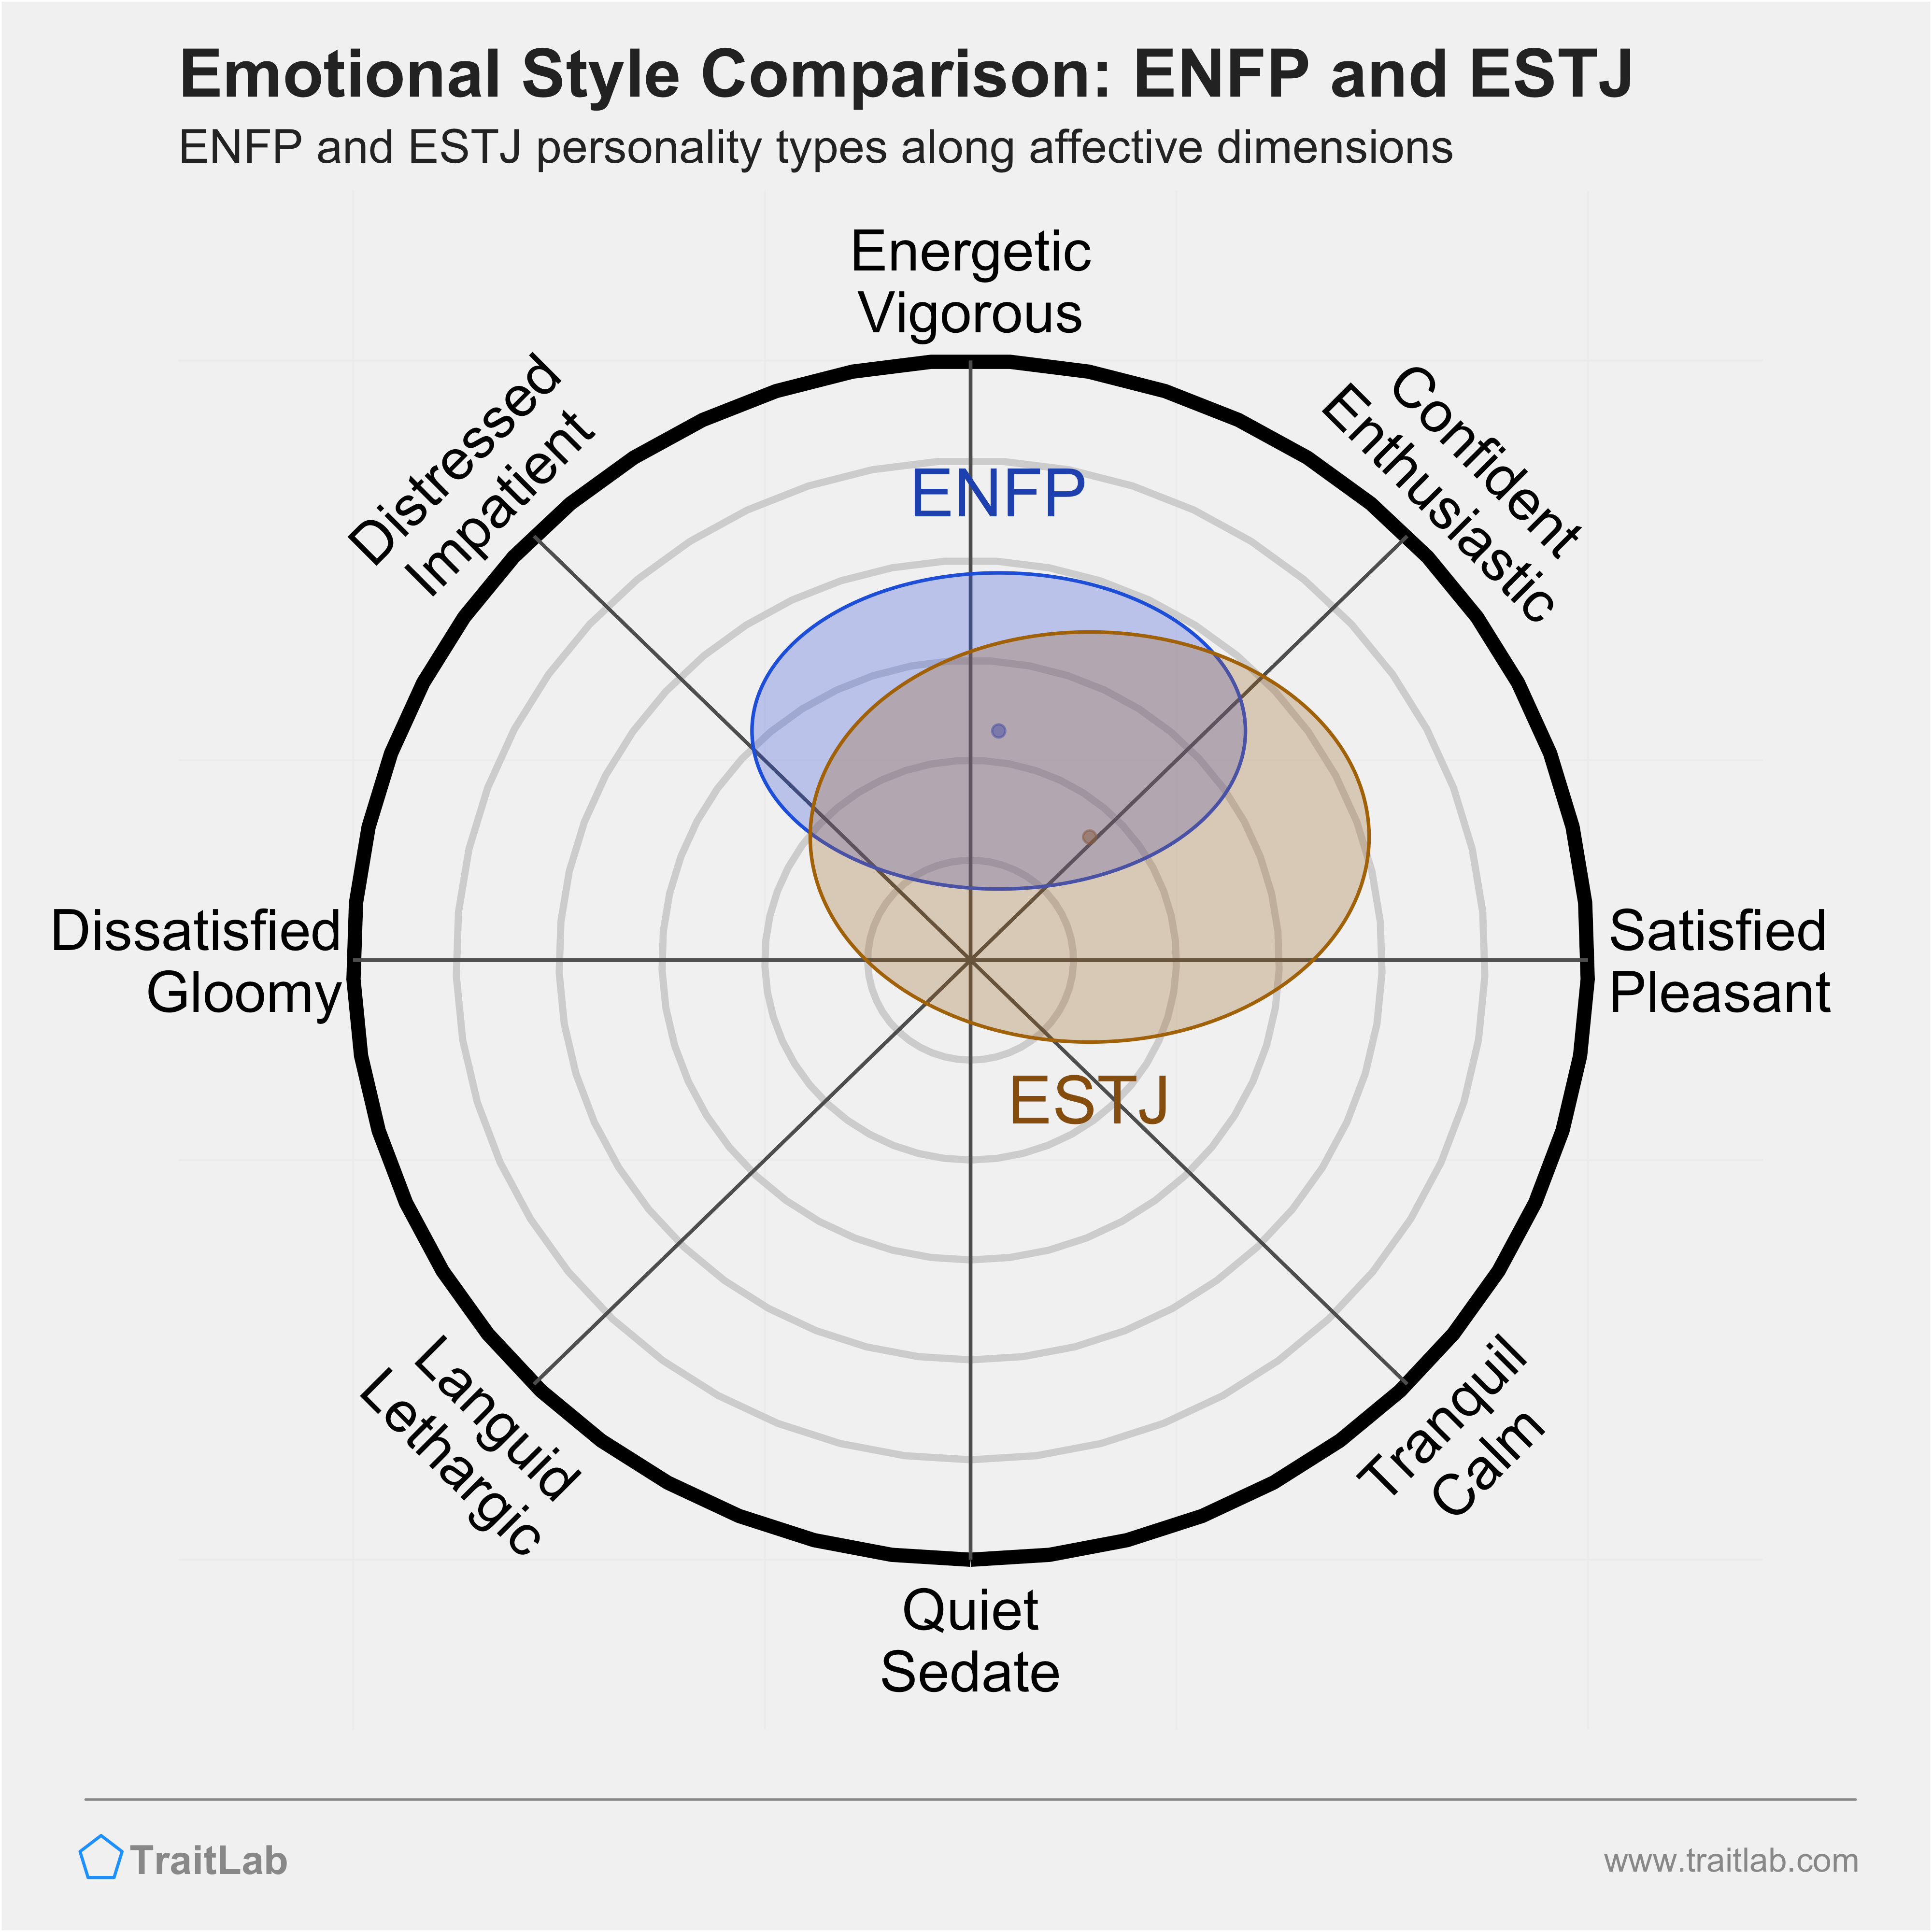 ENFP and ESTJ comparison across emotional (affective) dimensions